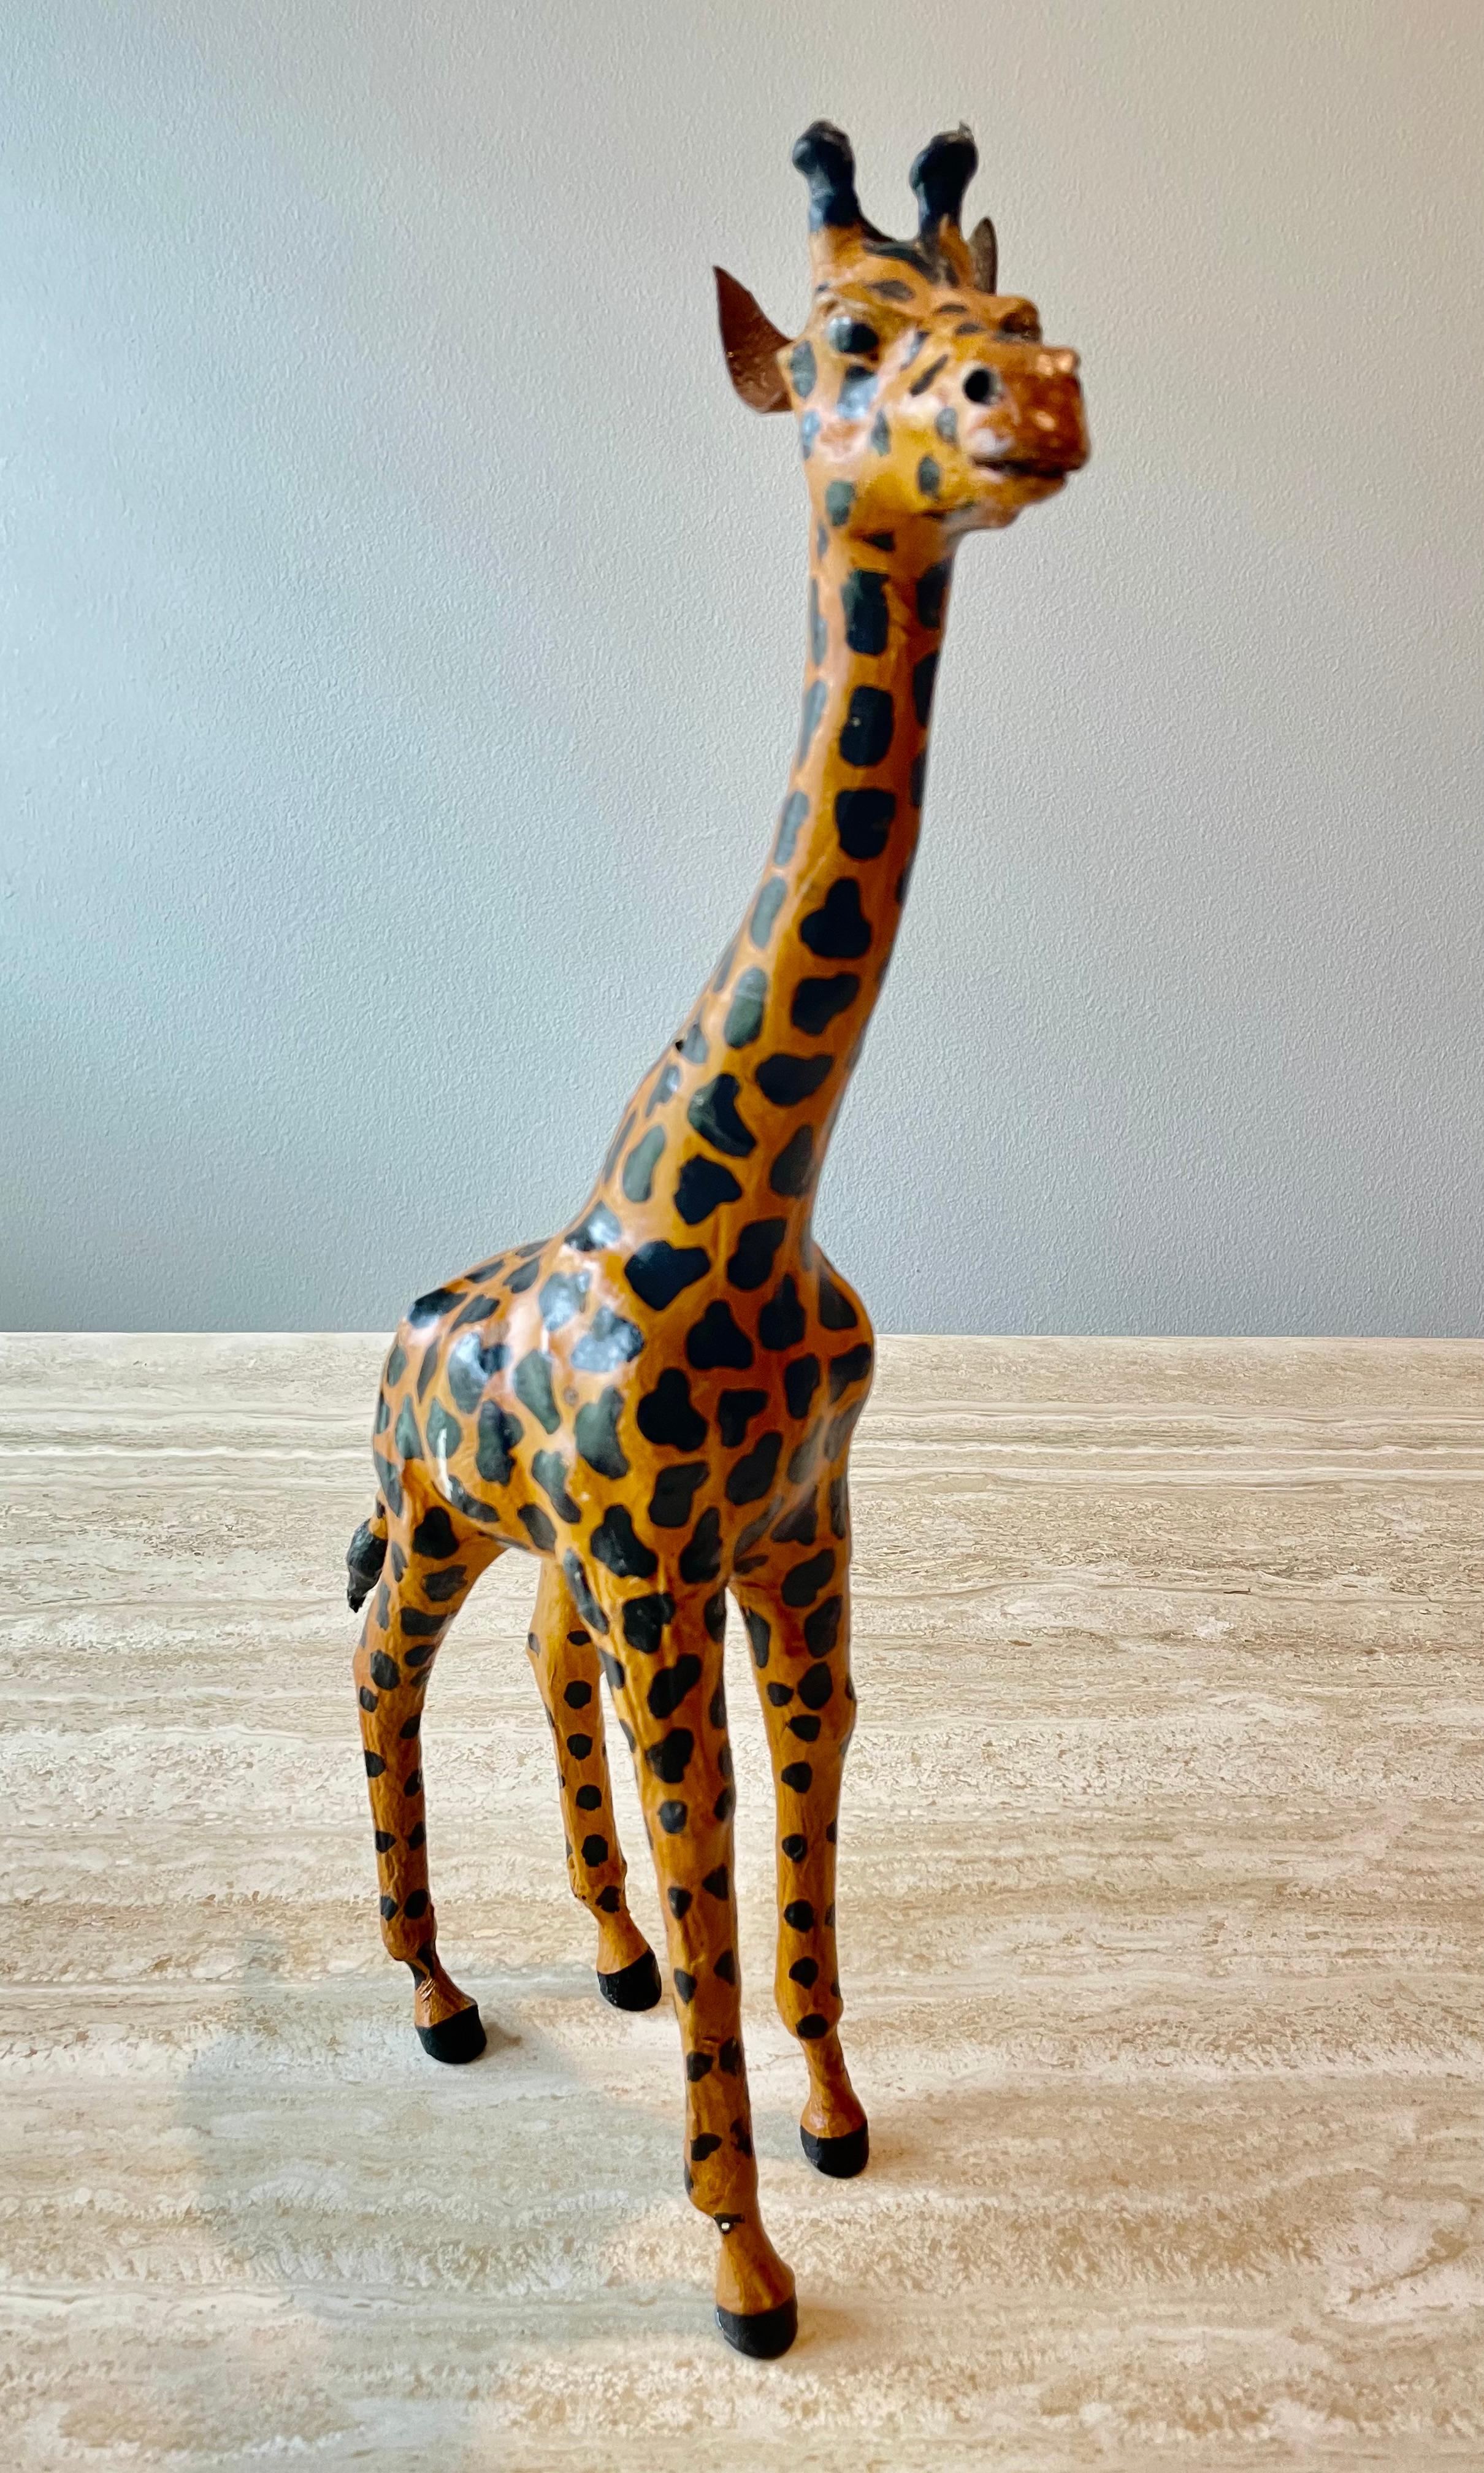 Magnifique girafe en cuir sculpté. Un excellent complément décoratif pour une bibliothèque.